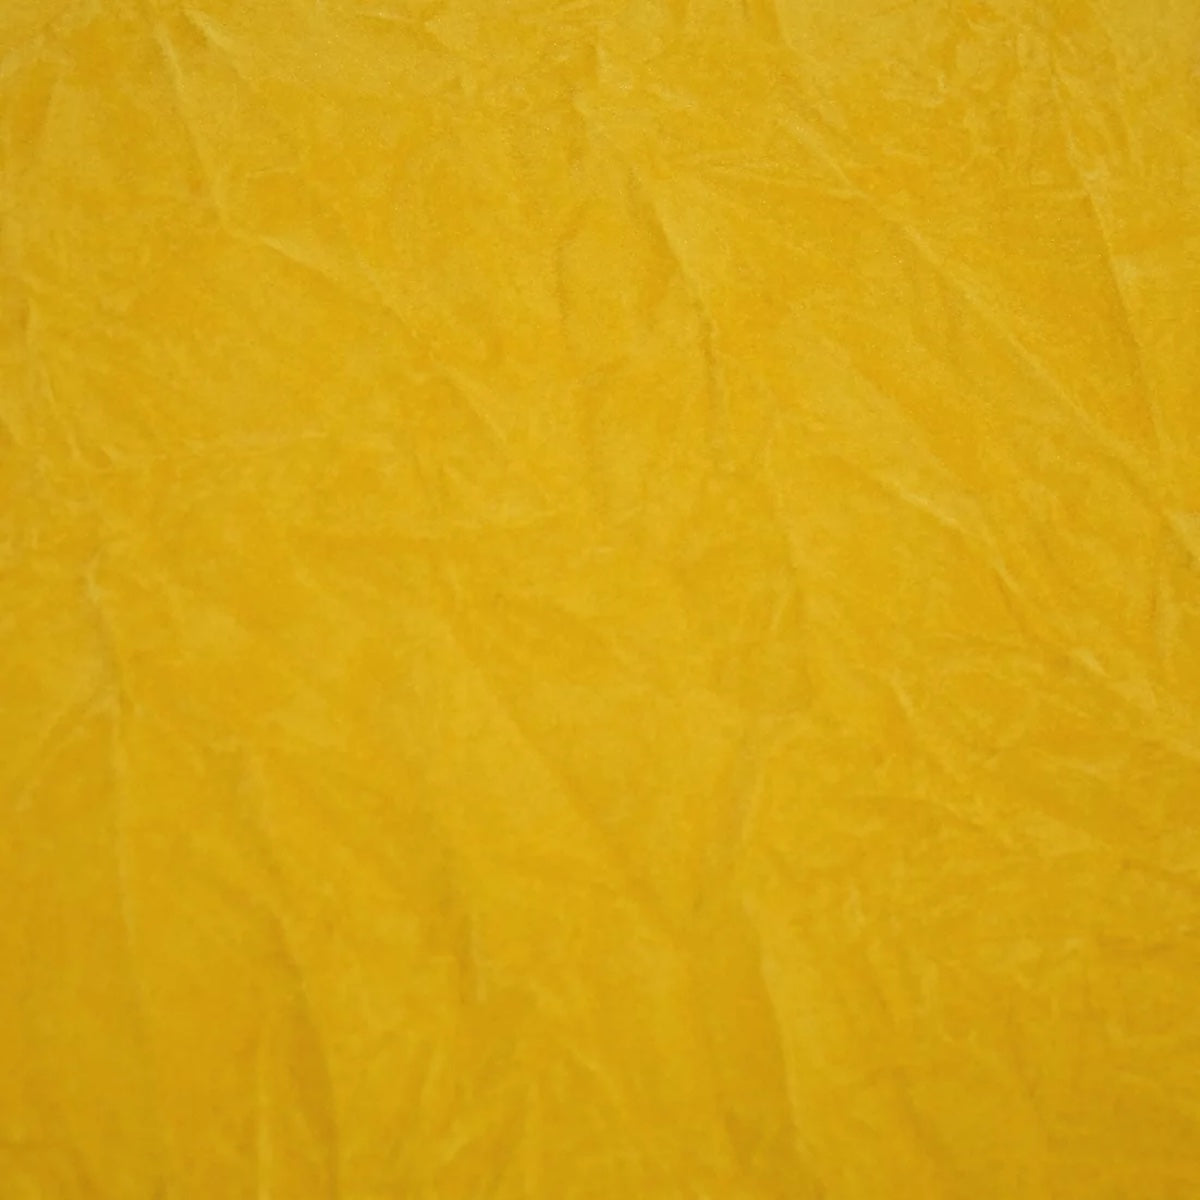 Yellow Crushed Velvet Flocking Fabric - Fashion Fabrics LLC